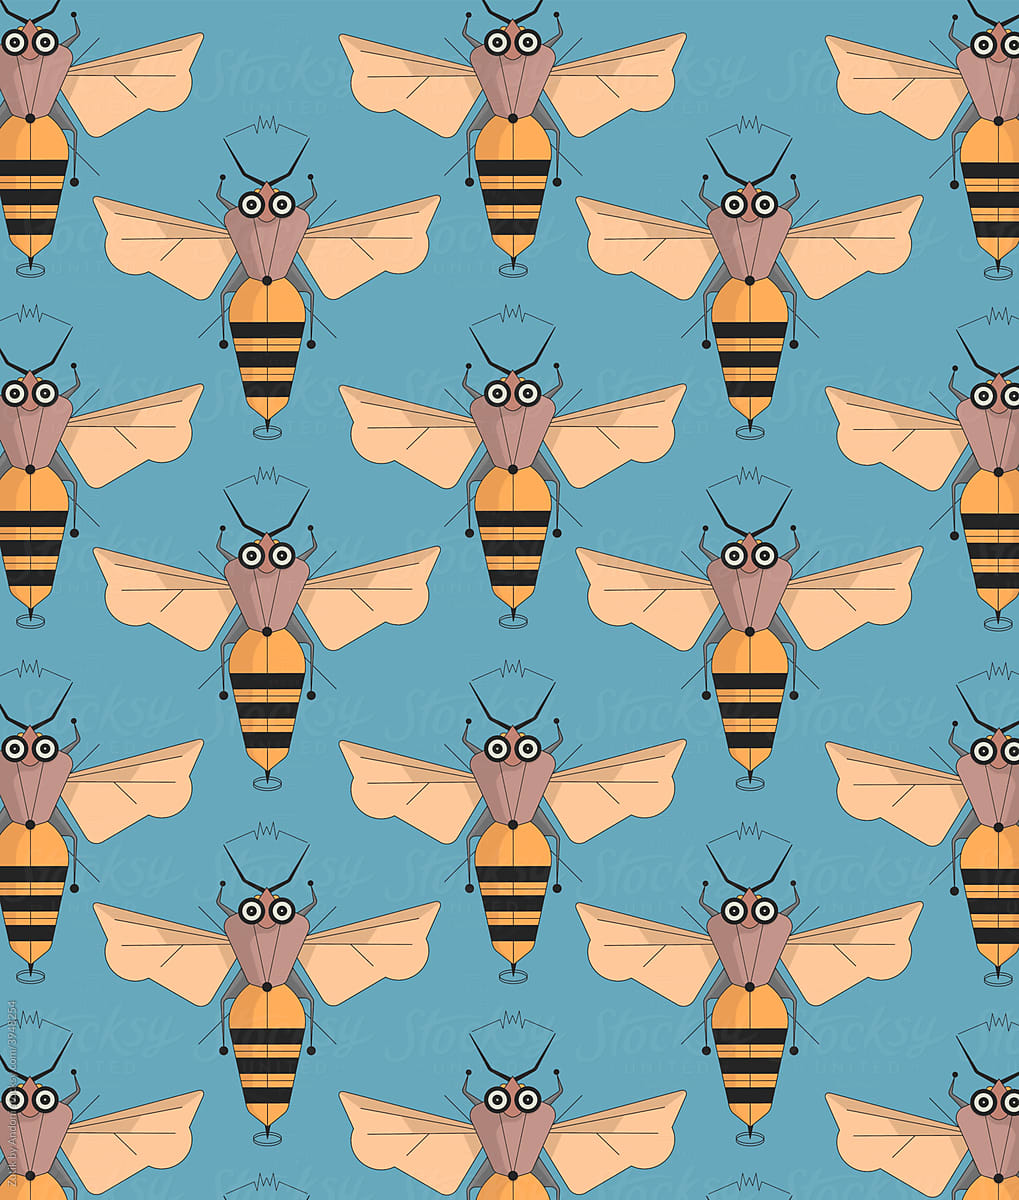 Bee pattern illustration